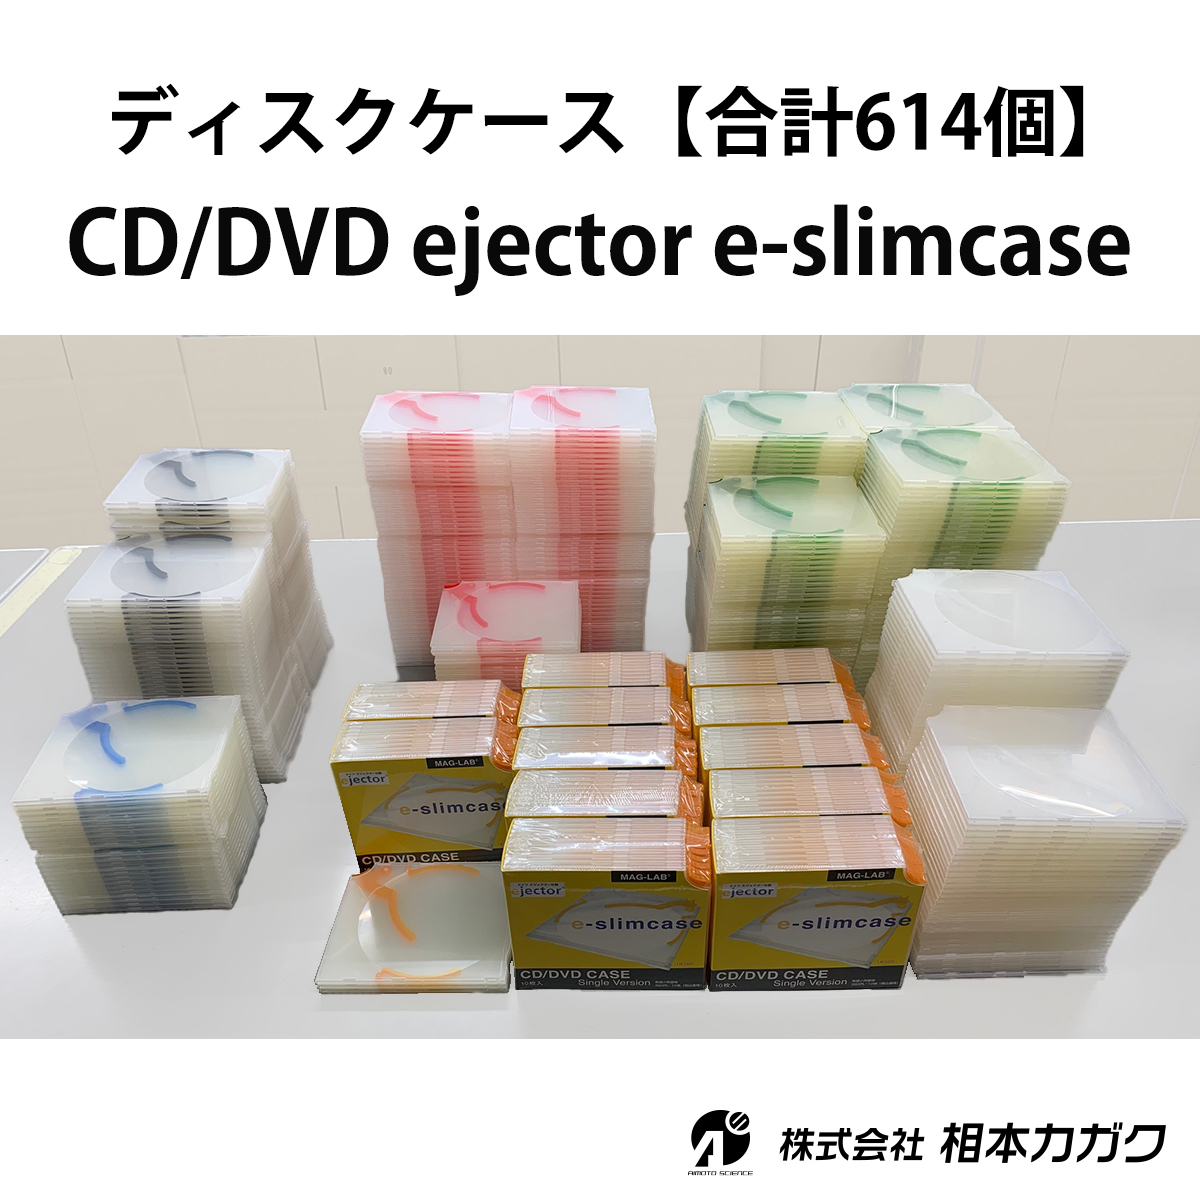 ◆まとめ売り 合計614個 【e-slimcase】CDケース DVDケース ブルーレイケース ディスク1枚収納◆相本カガク_画像1